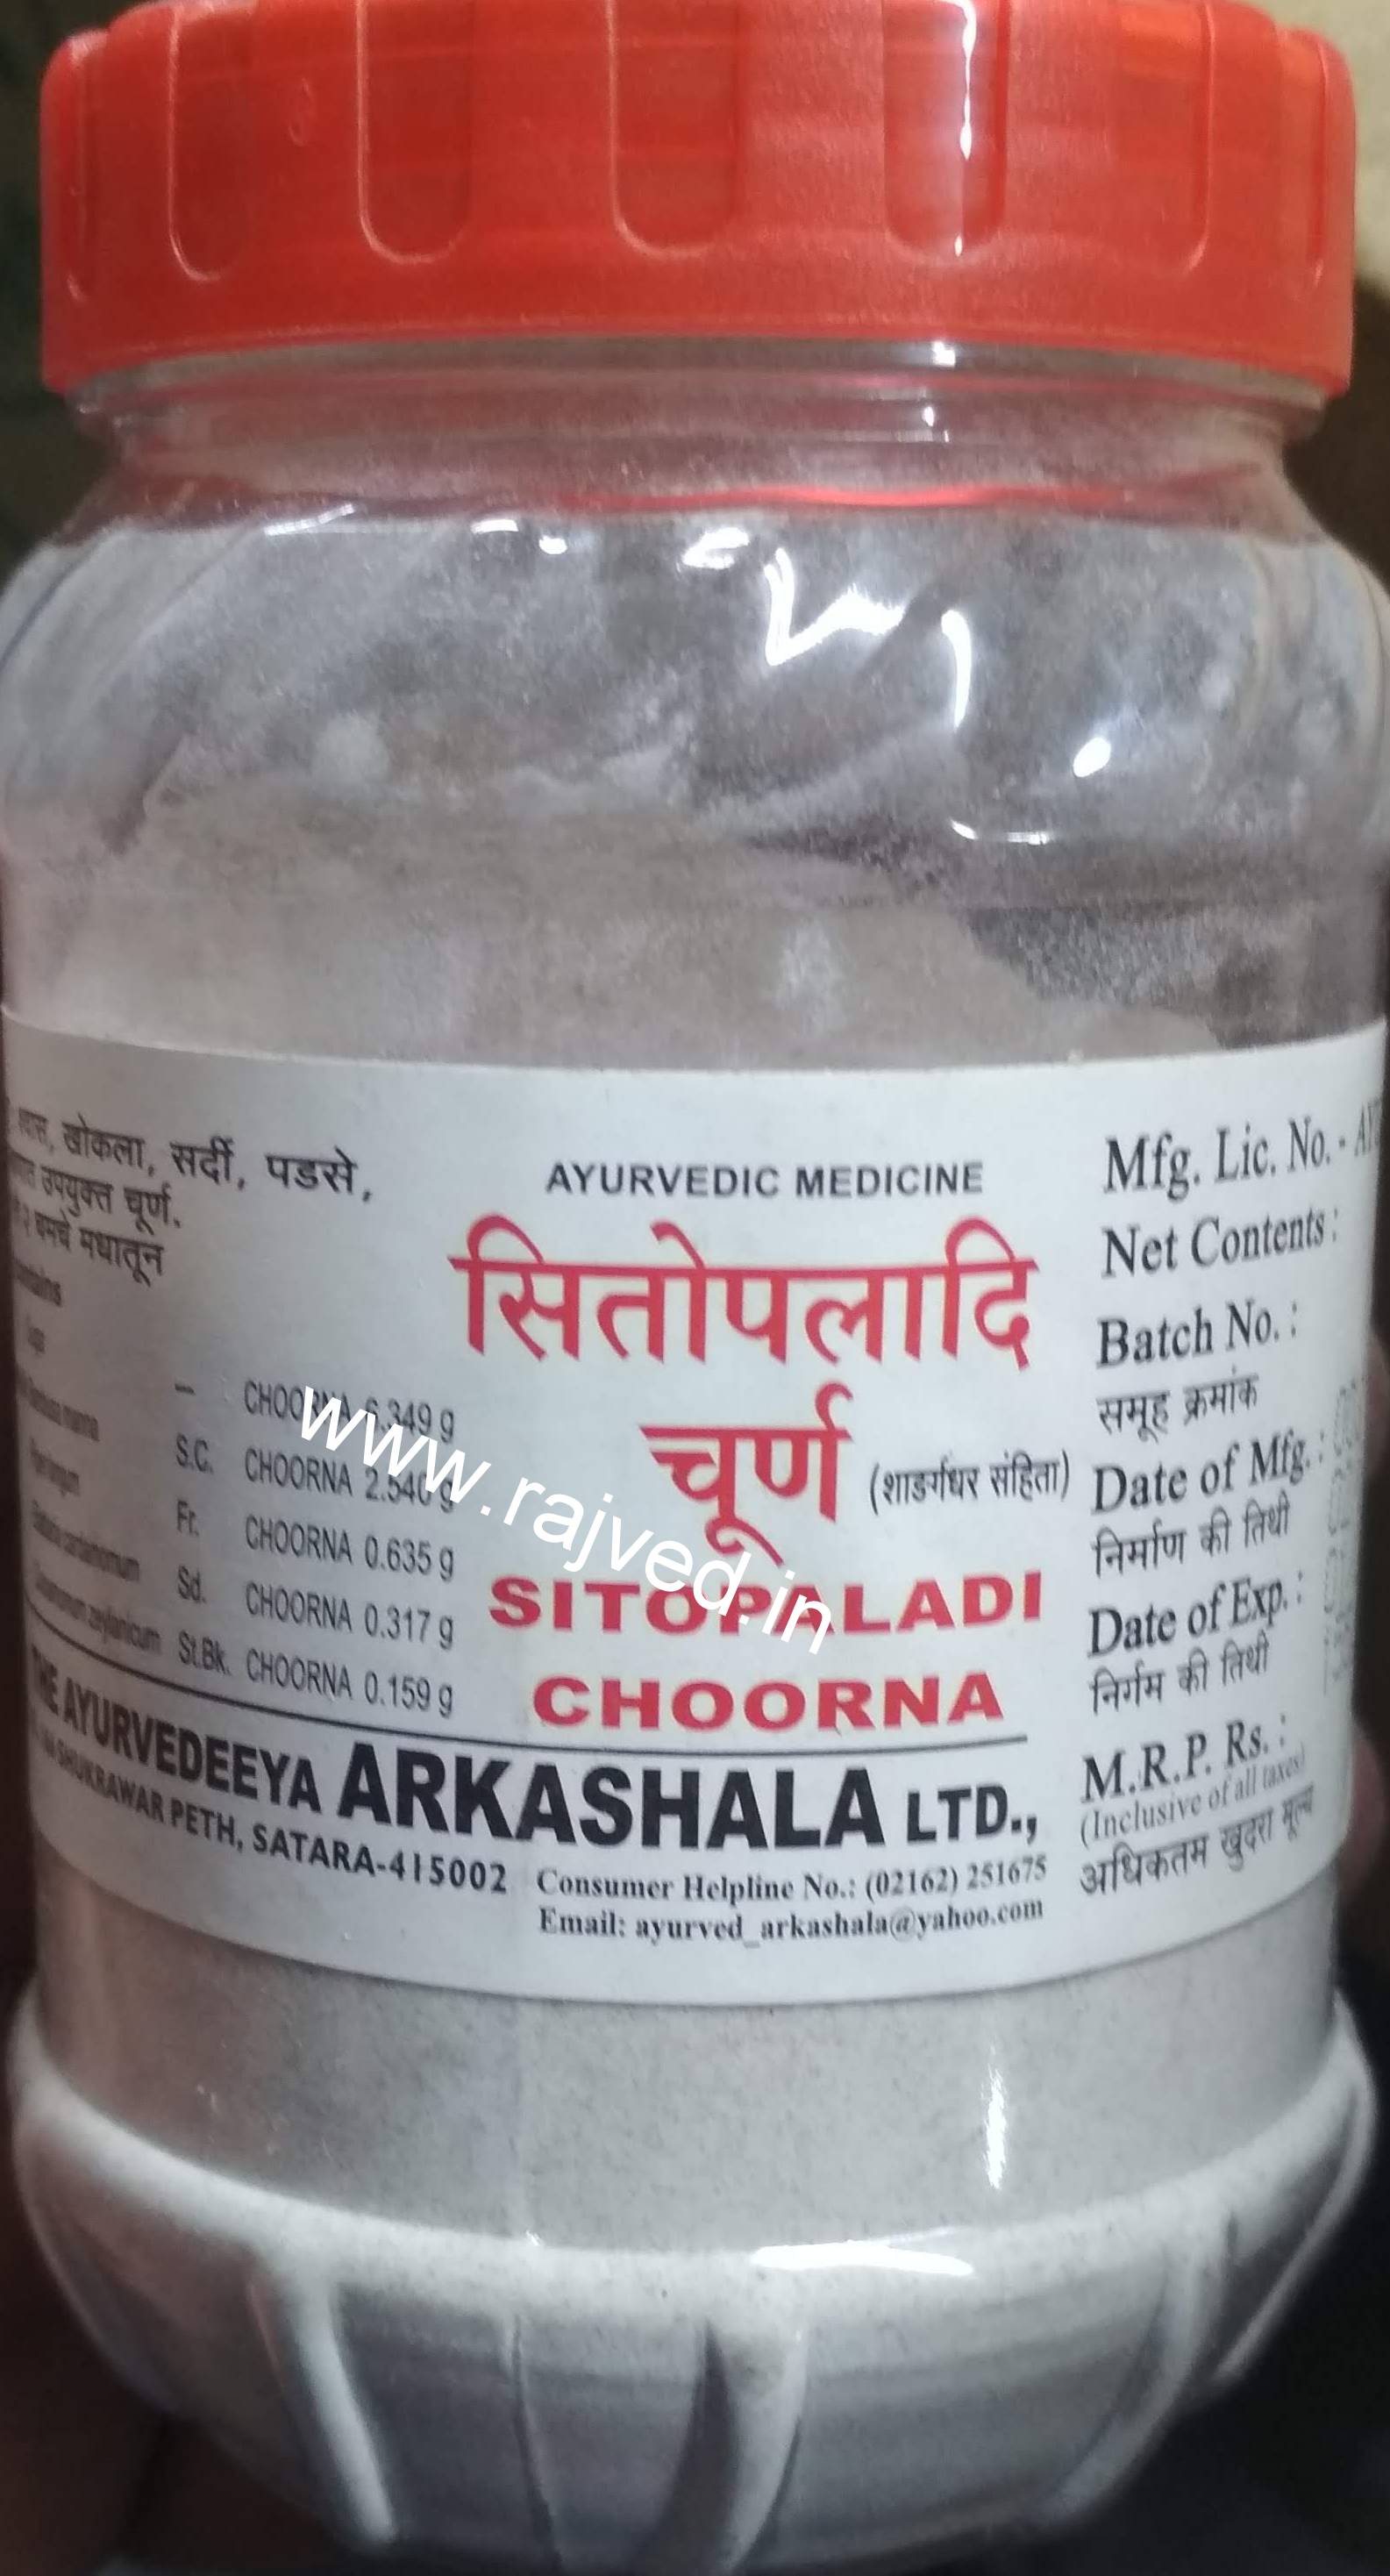 sitopaladi choorna 500 gm upto 15% off the ayurveda arkashala